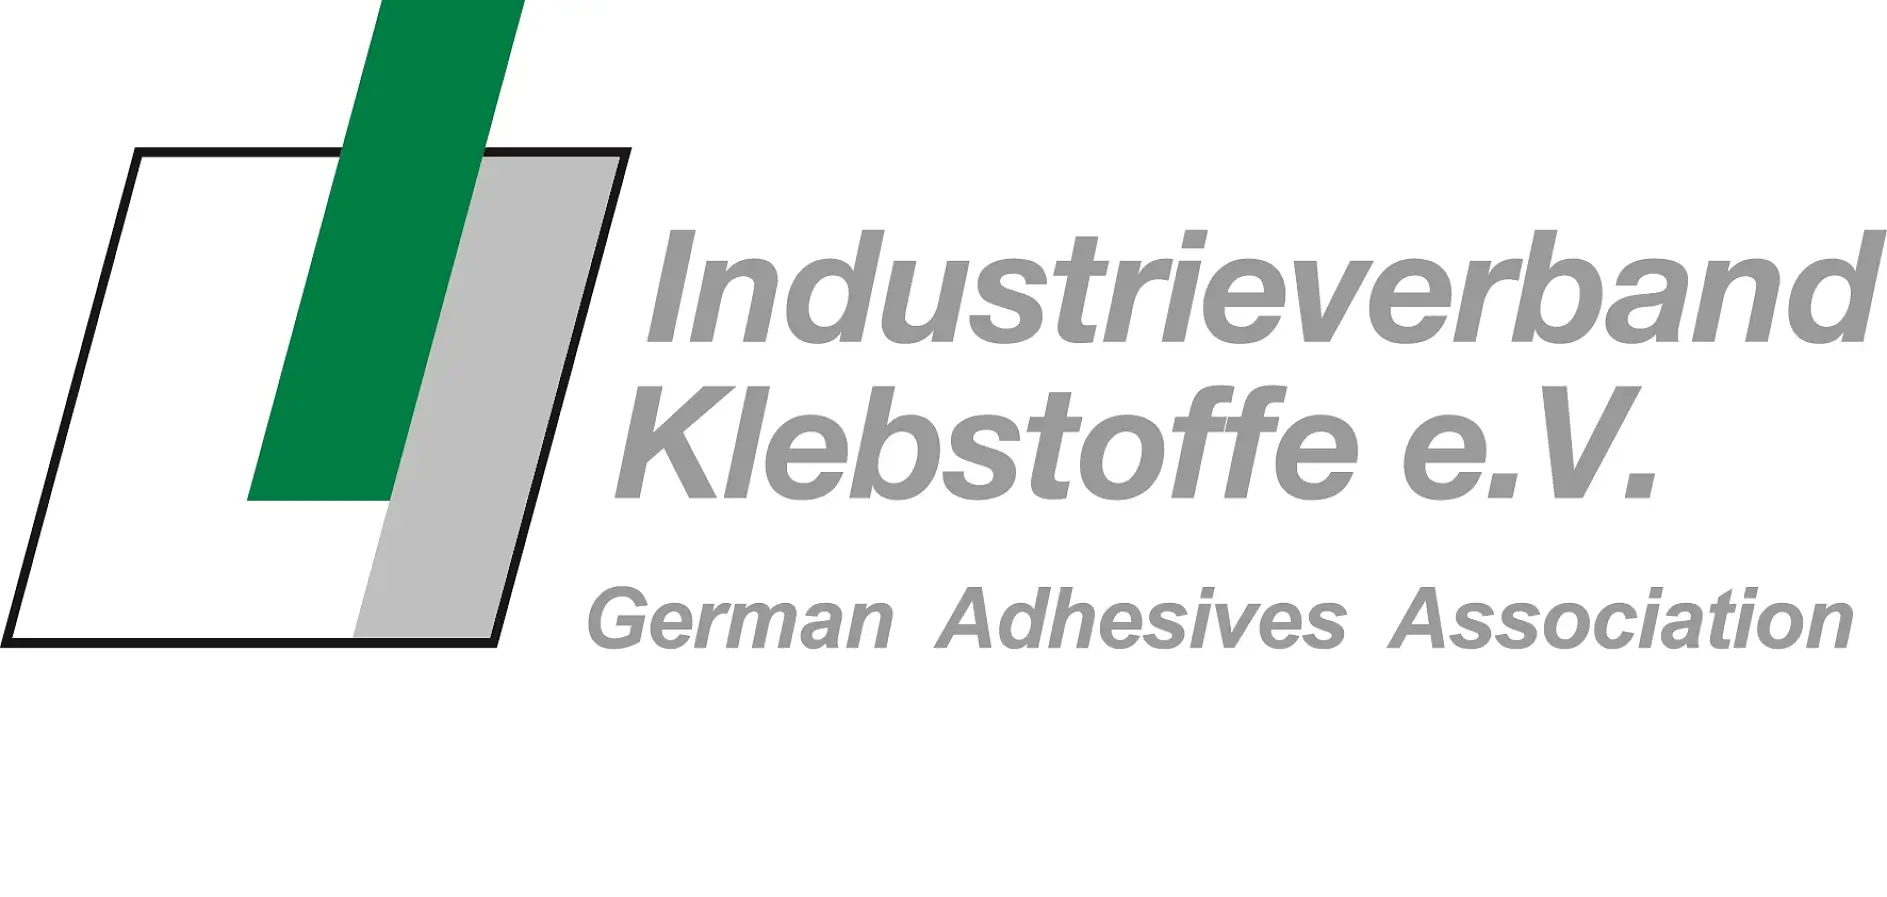 Der deutsche Klebstoffverband ist der größte der Welt. Mit seinem breiten Leistungsspektrum ist er auch die weltweit führende nationale Organisation auf dem Gebiet der Klebelösungen.